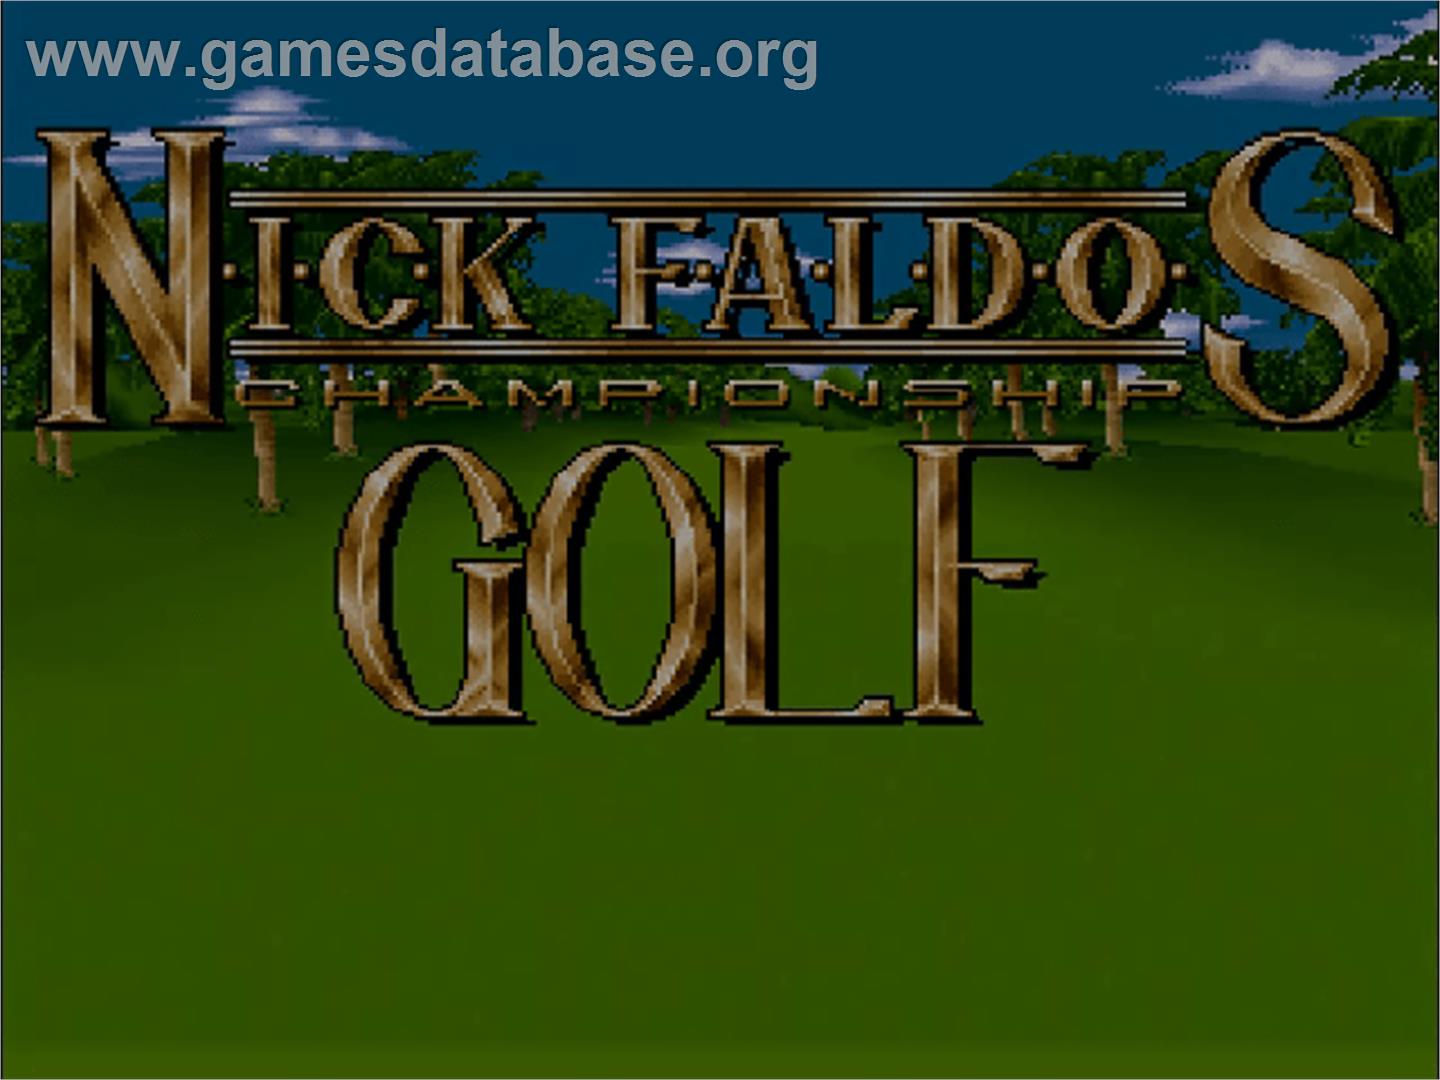 Nick Faldo's Championship Golf - Commodore Amiga CD32 - Artwork - Title Screen